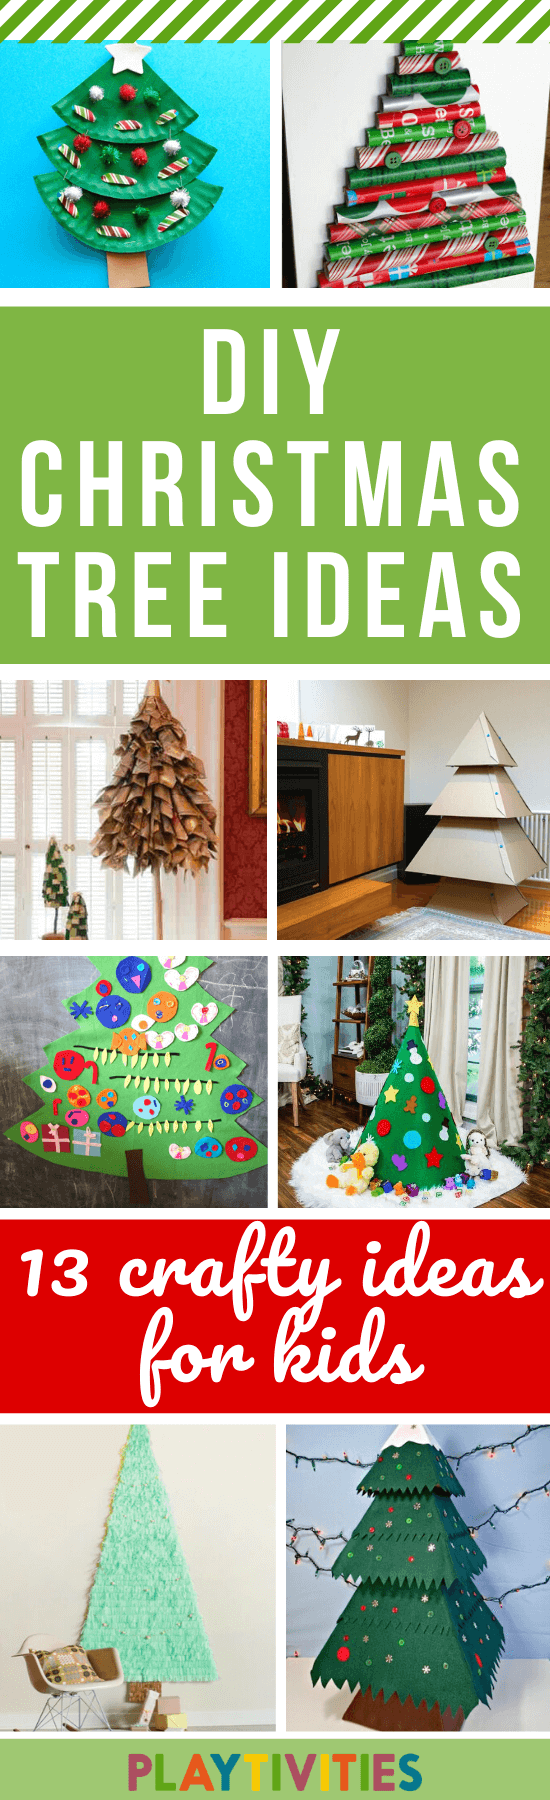 DIY Christmas tree ideas